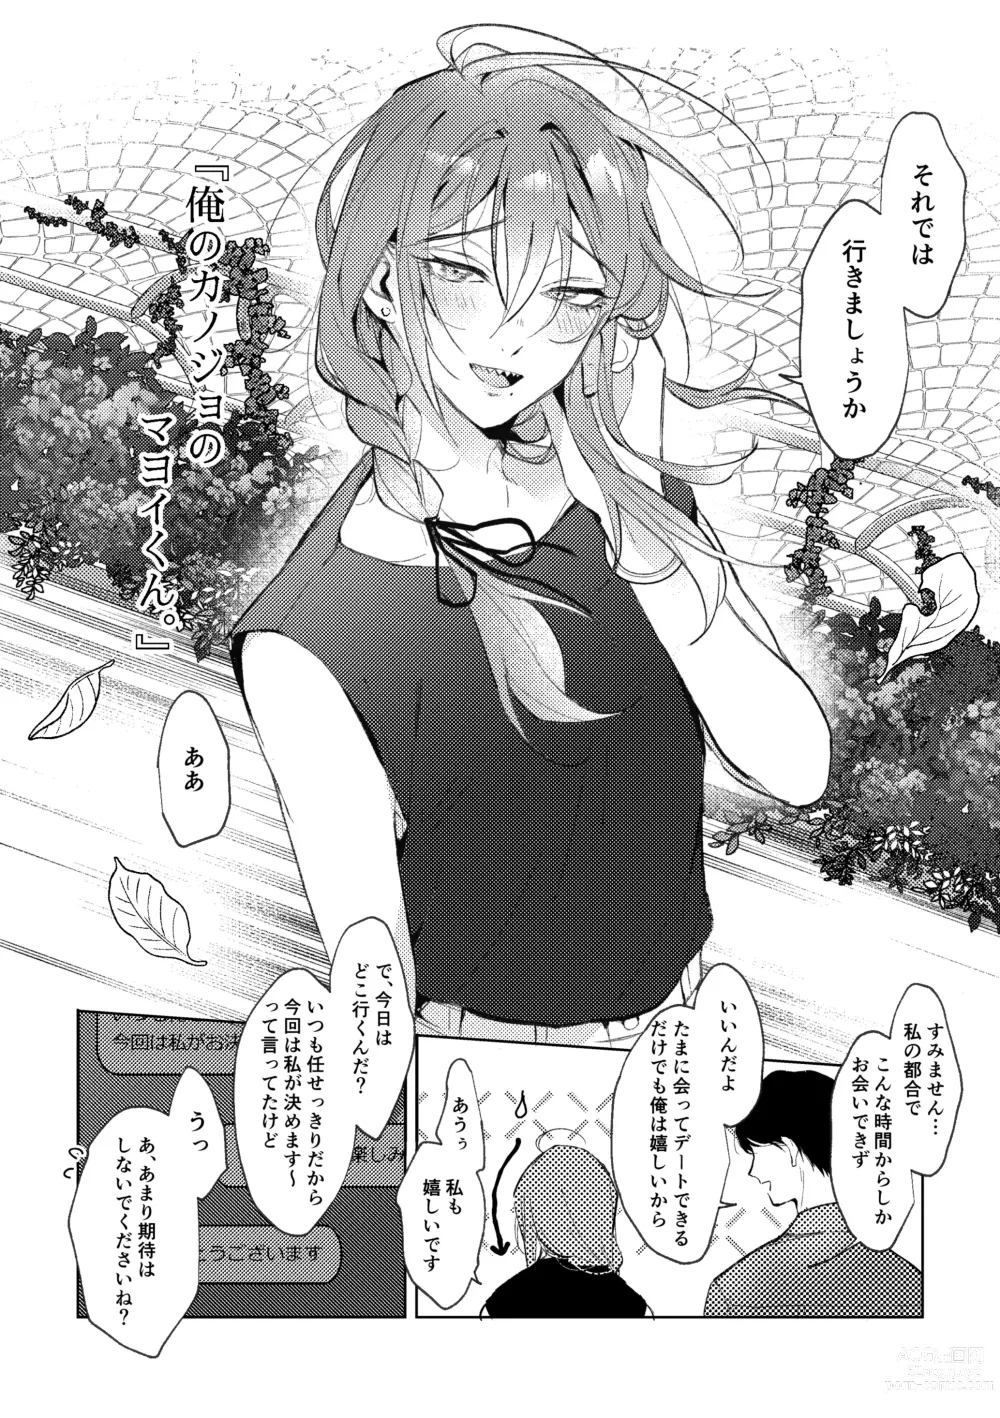 Page 7 of doujinshi Ore no Kanojo no Mayoi-kun.